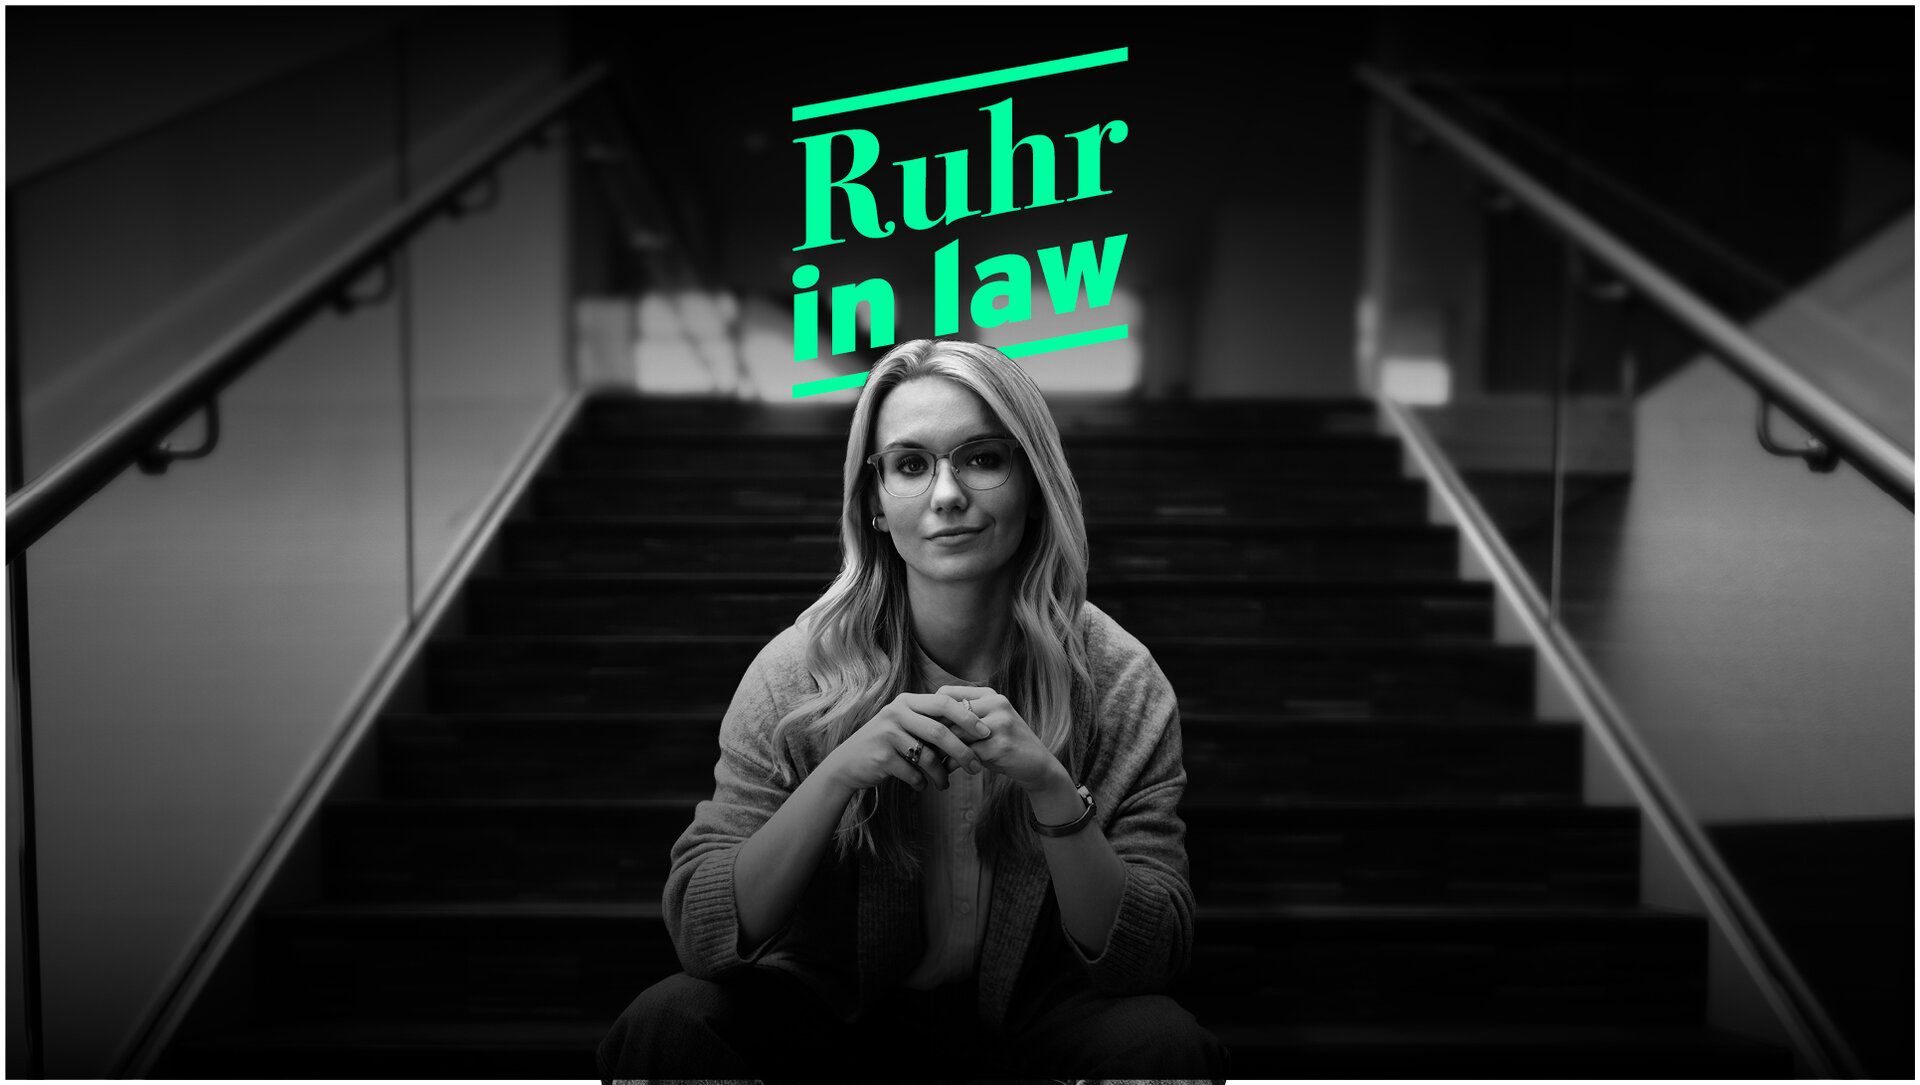 Eine Mitarbeiterin der Justiz sitzt auf einer Treppe. Dazu der Text "Ruhr in law". ist eine leere große Lagerhalle zu sehen.